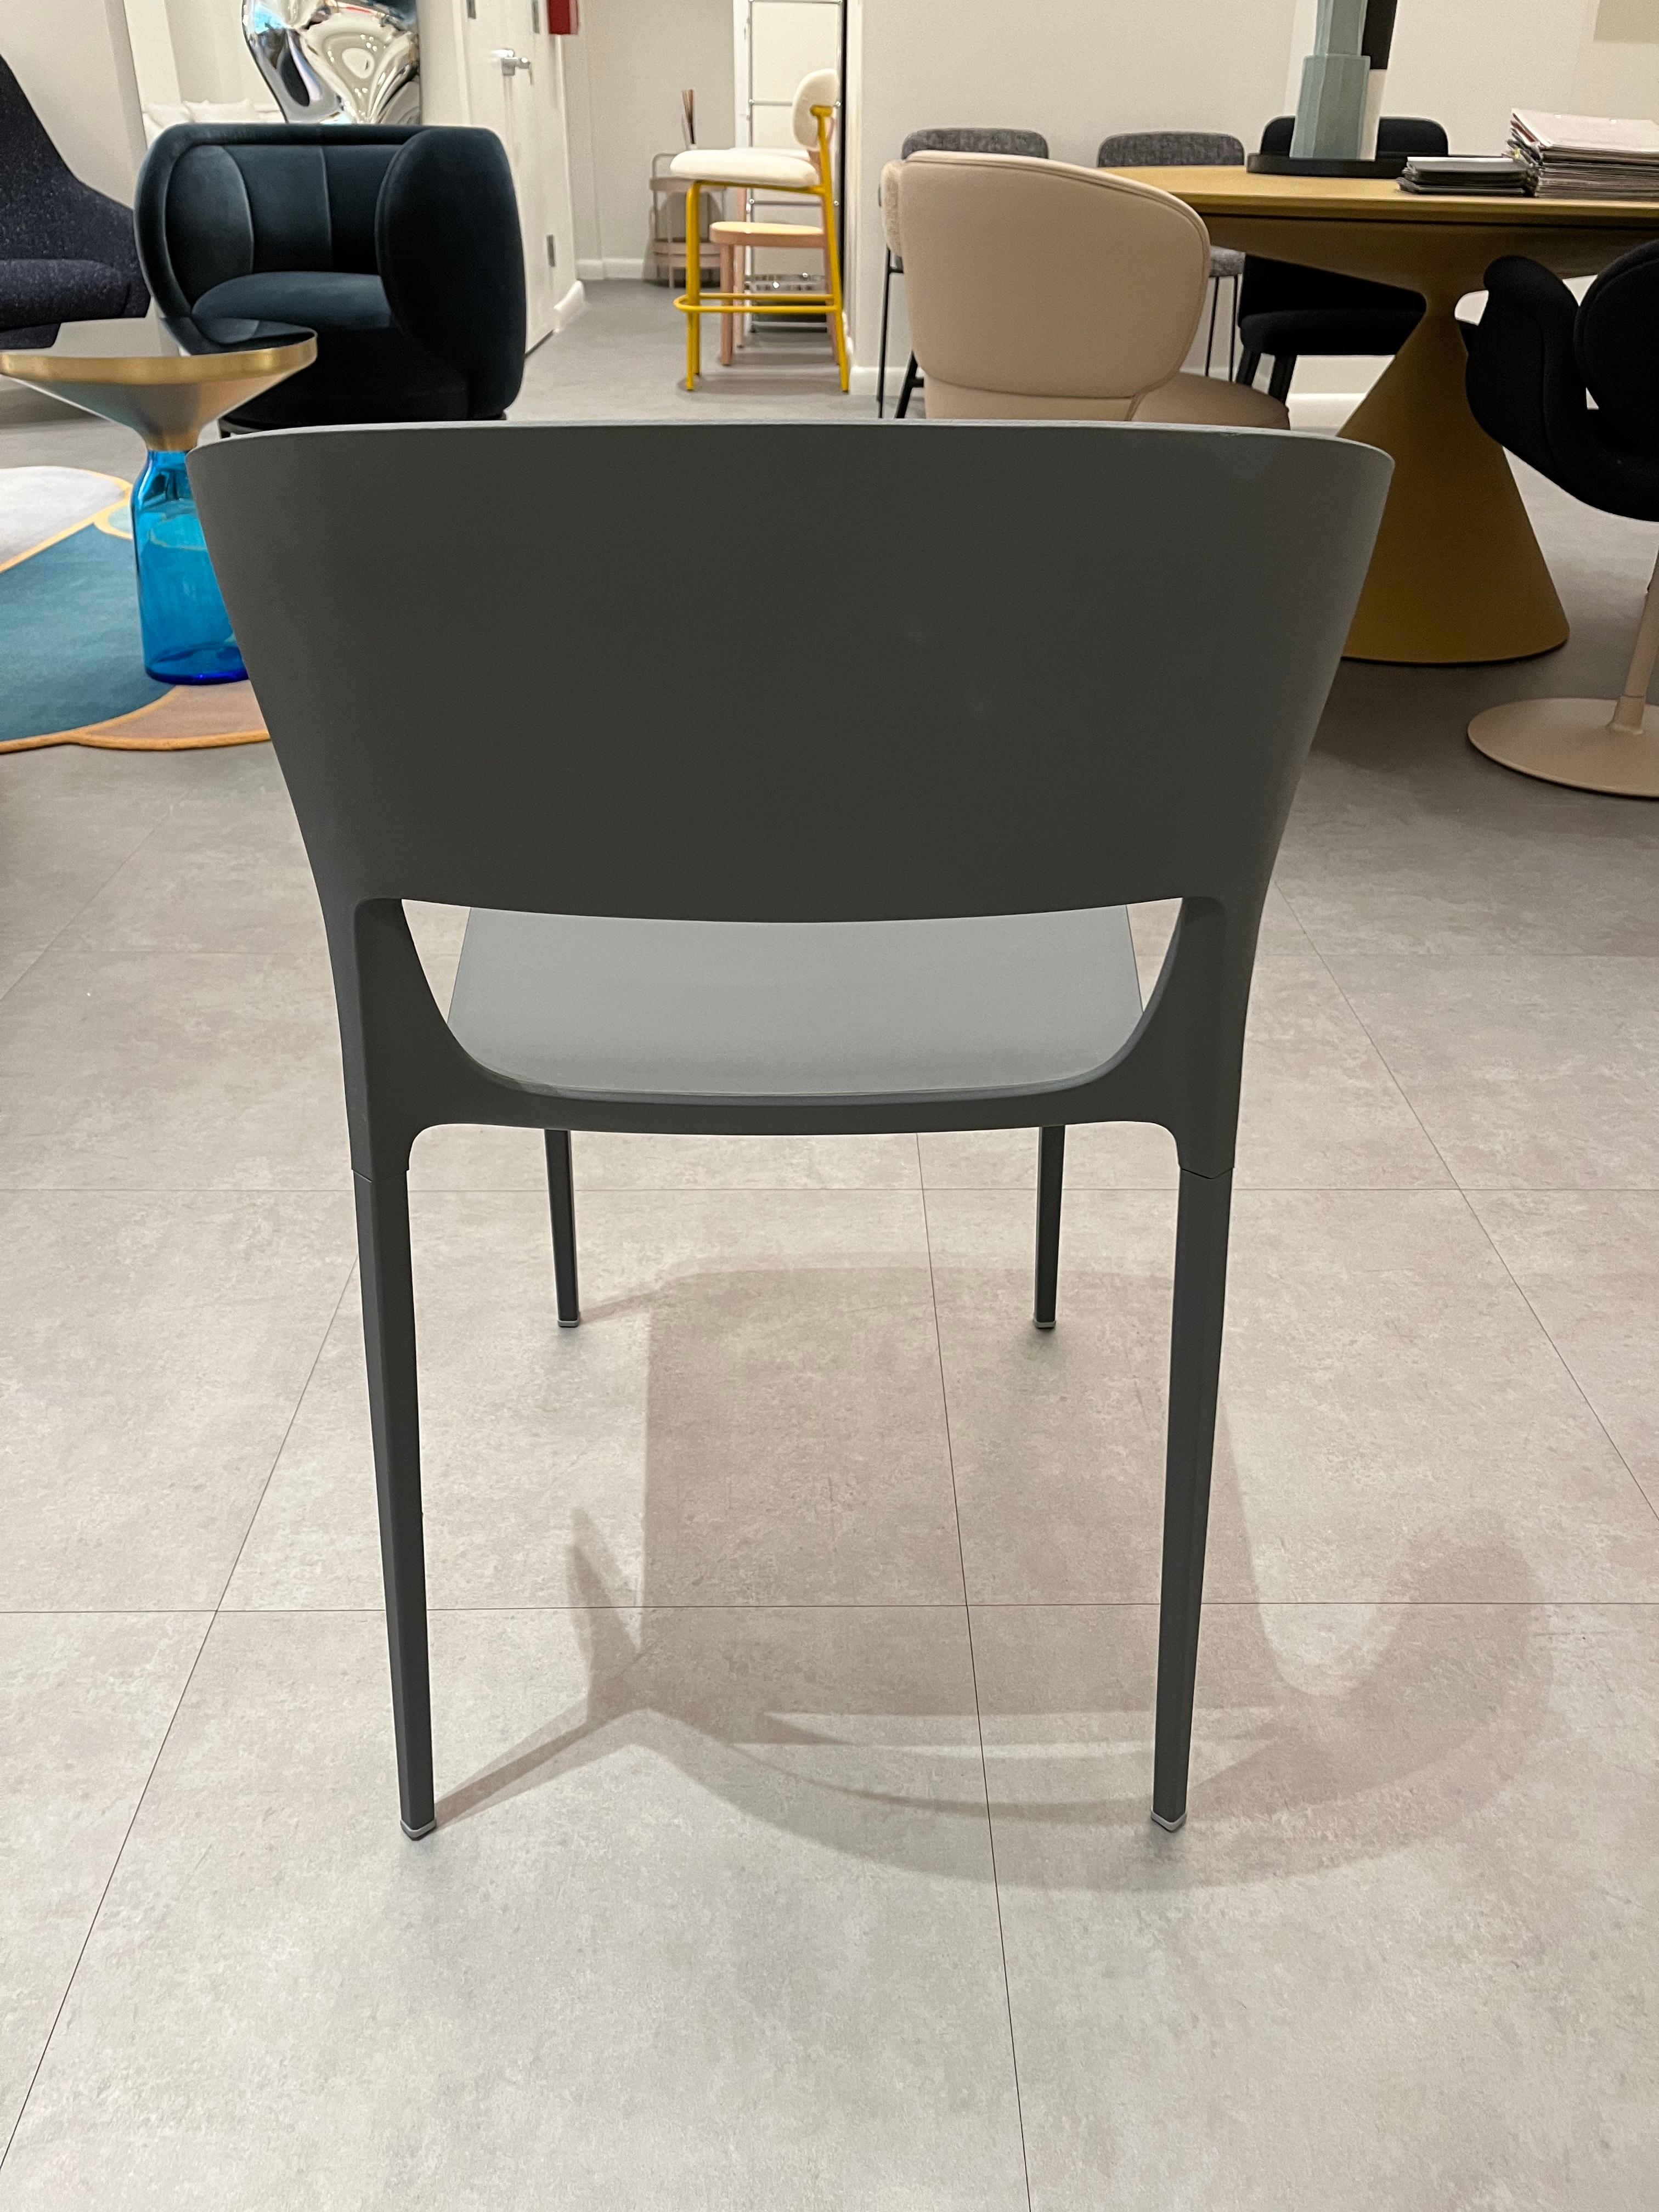 Koki
Pocci + Dondoli - 2015
MATERIAL : polyuréthane intégral
Le monde de la sous-traitance entre dans l'espace domestique avec la gamme de chaises Koki  avec un design contemporain et frais. Un équilibre parfait entre forme, fonction et innovation,